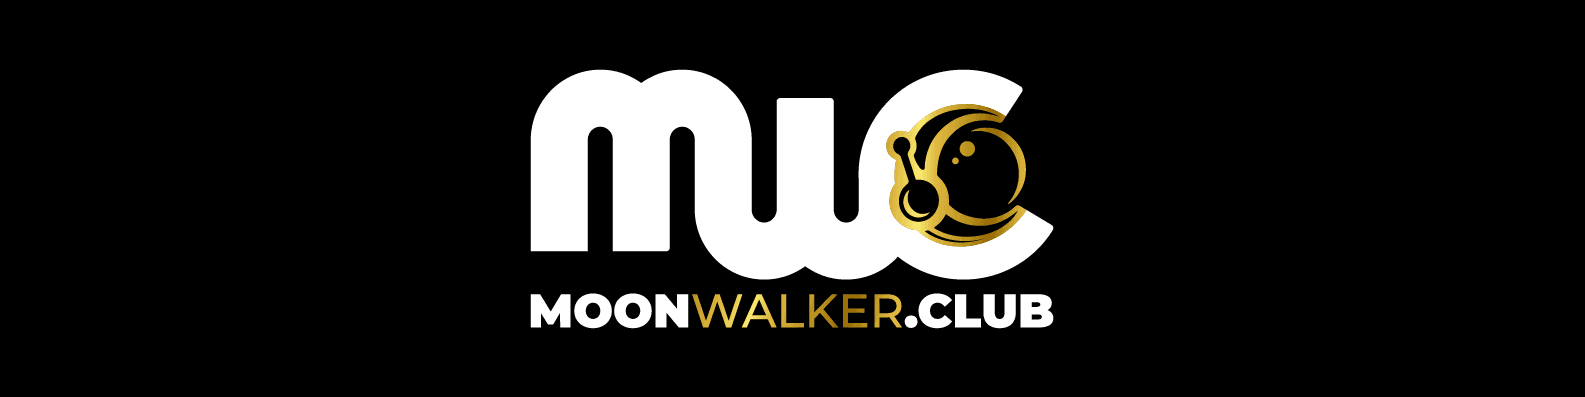 moonwalkerclub banner